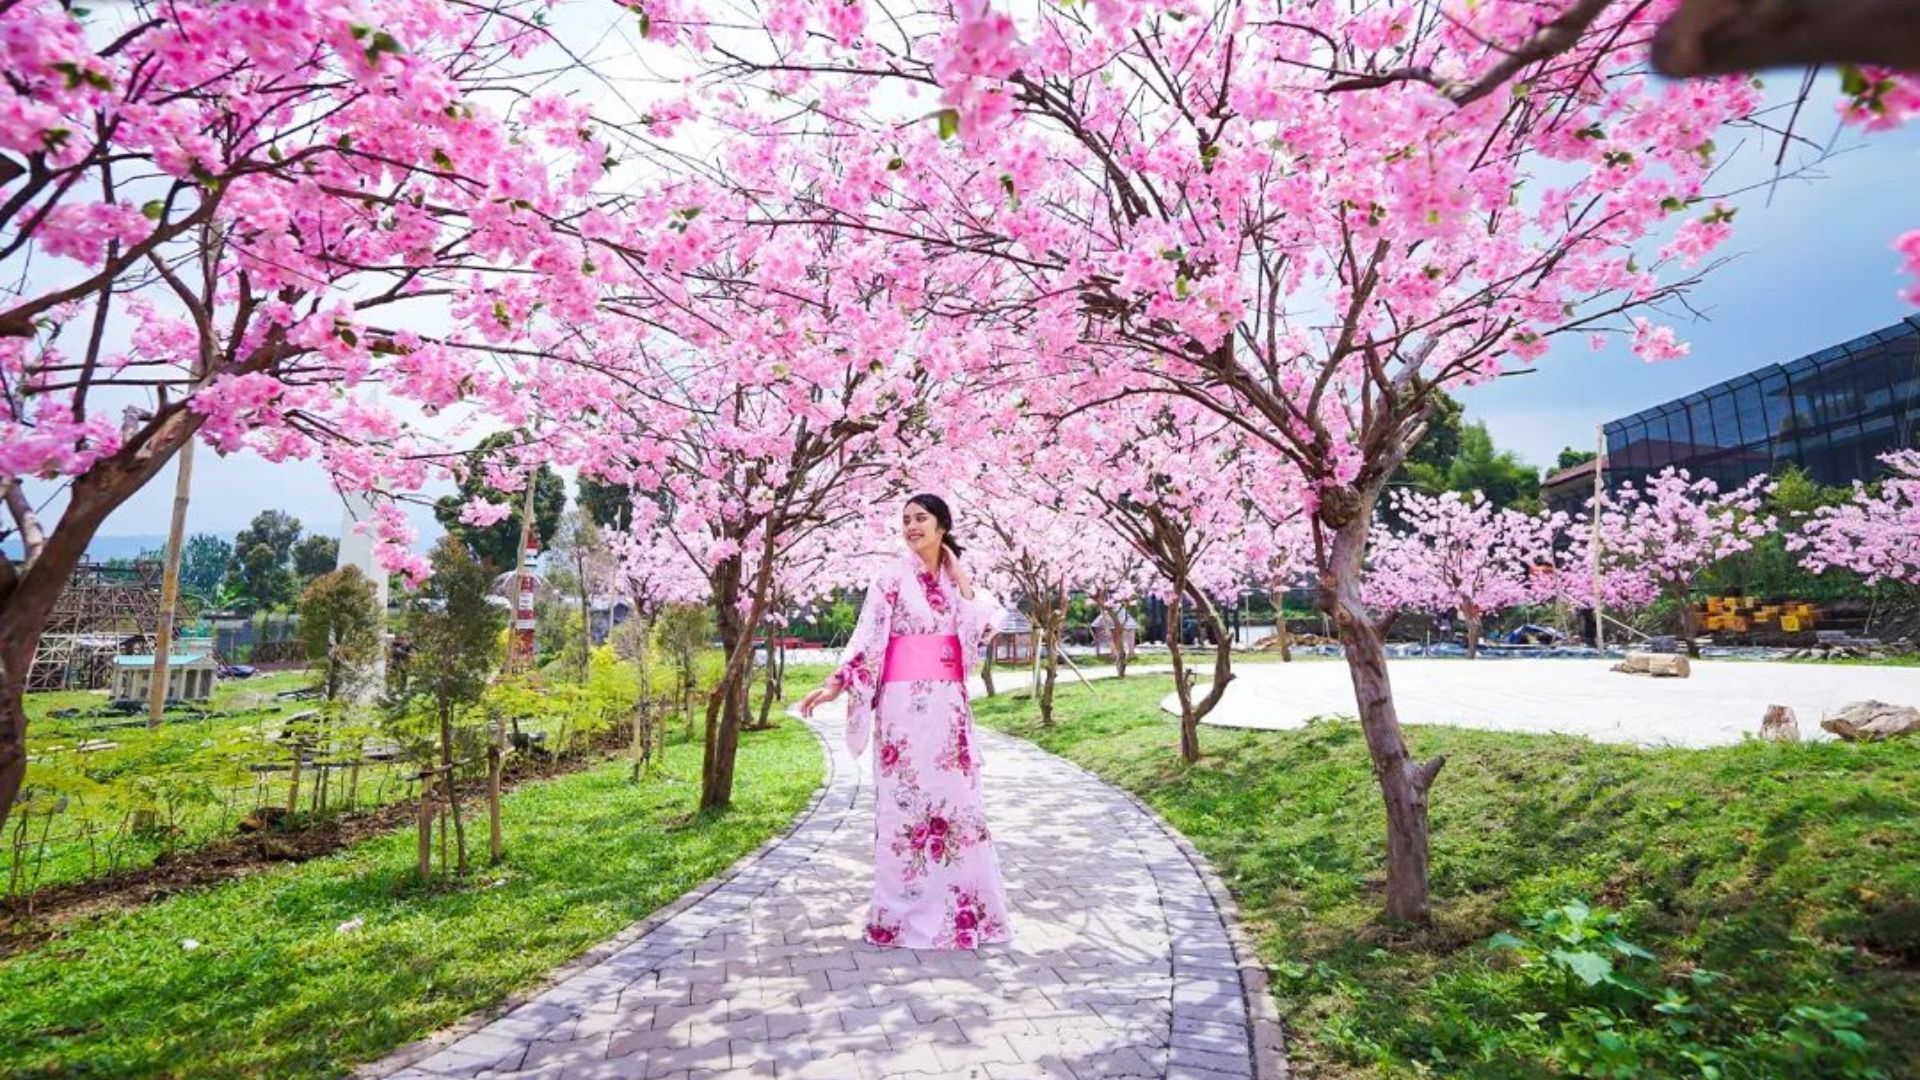 Berfoto dengan kostum Jepang di Sakura Park, Mini Mania Lembang, Bandung.